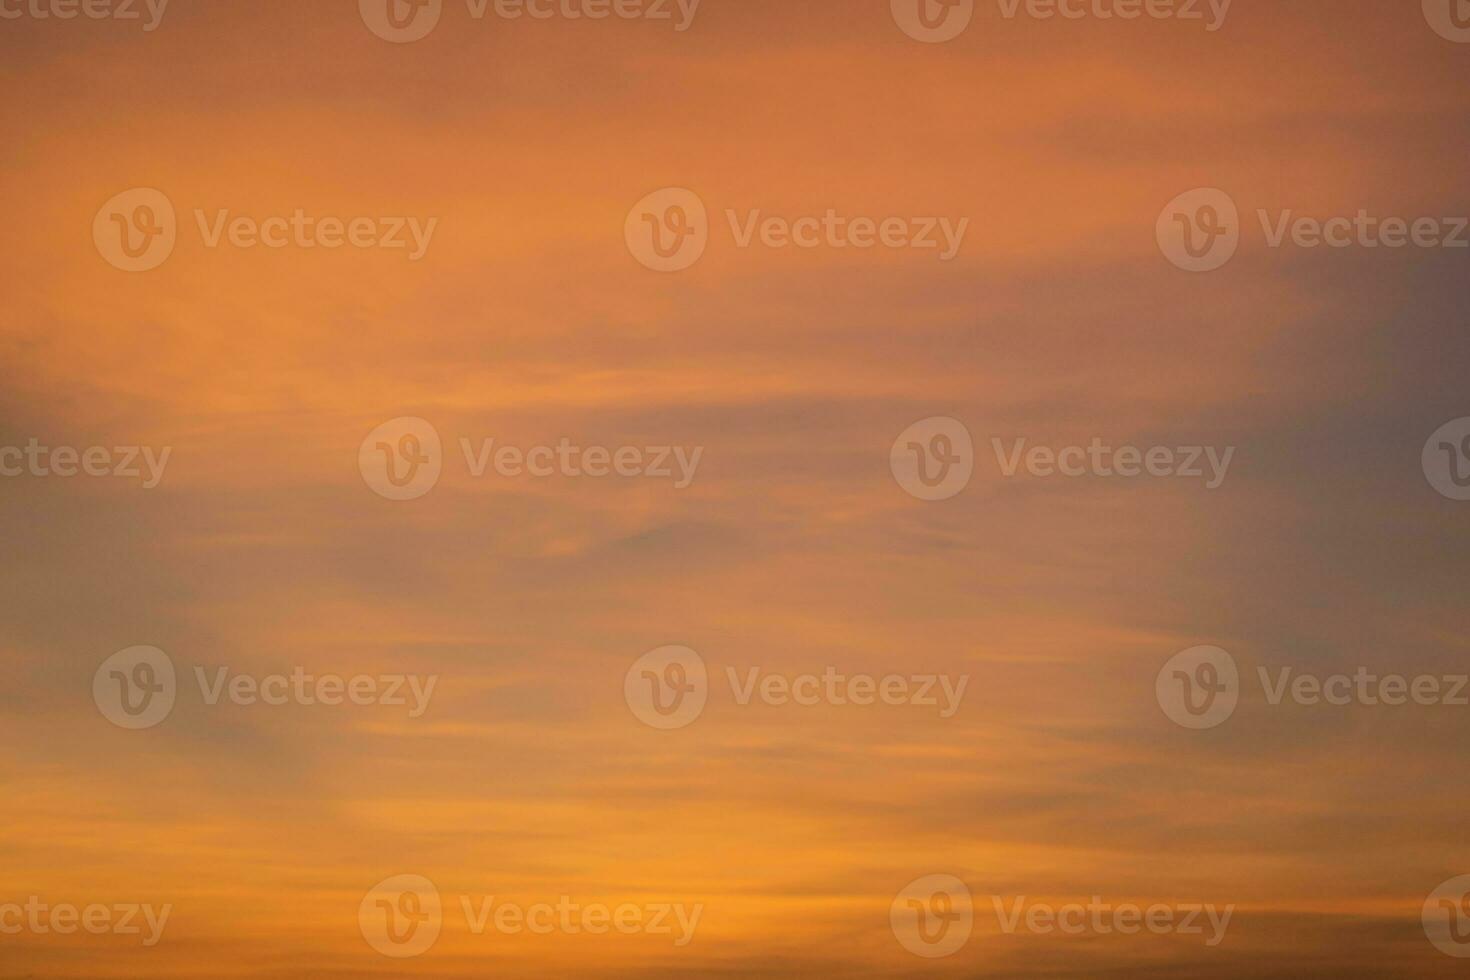 skymning himmel. naturlig solnedgång eller soluppgång himmel i orange, natur bakgrund. foto